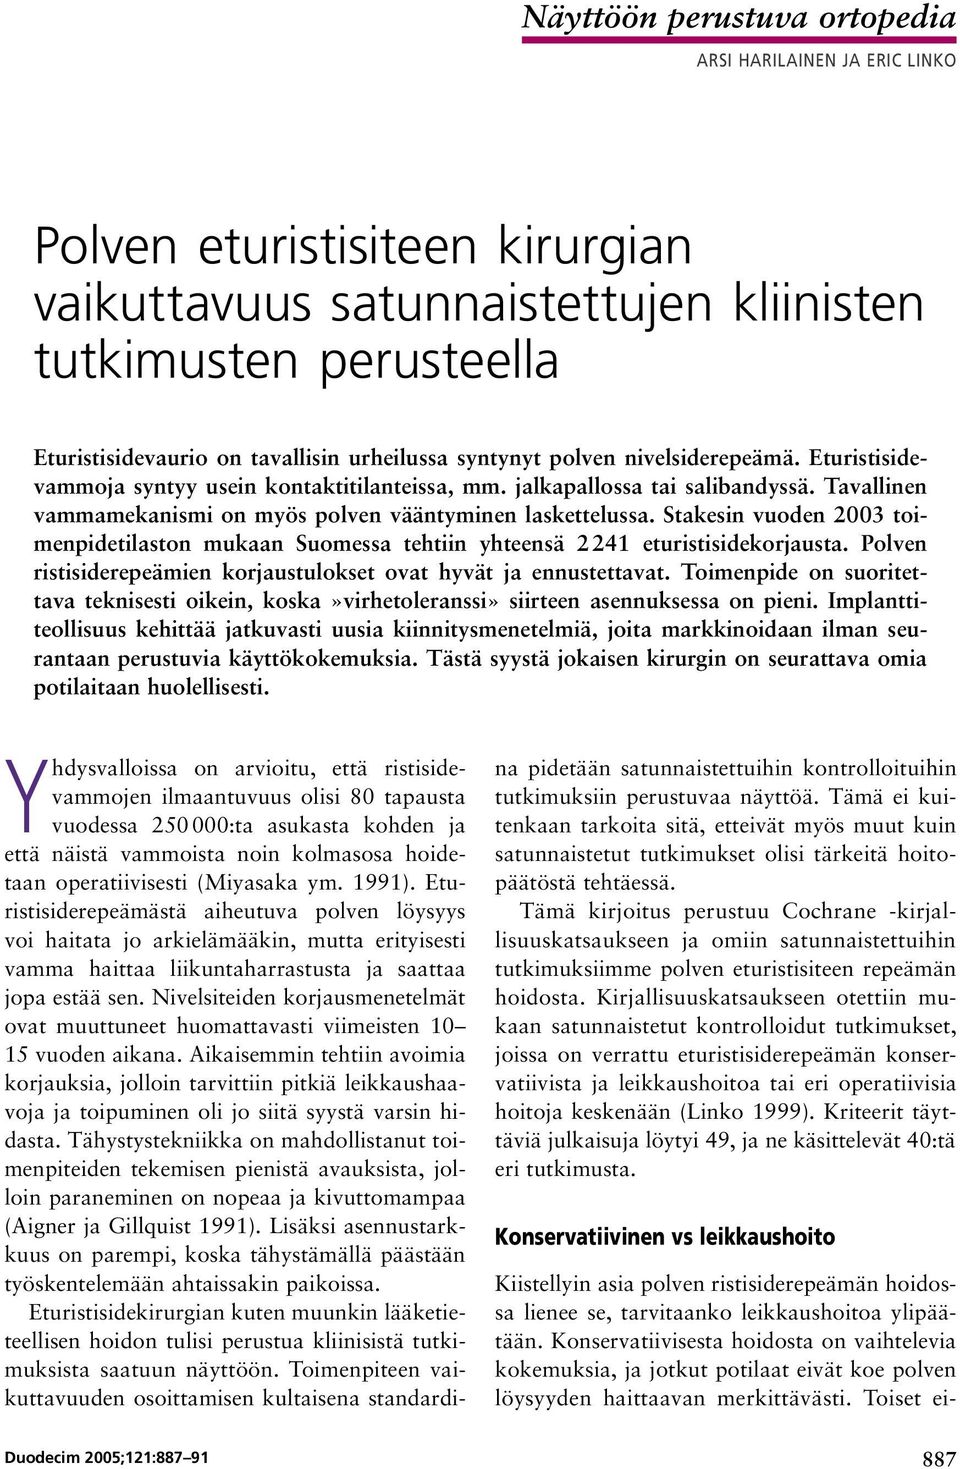 Tavallinen vammamekanismi on myös polven vääntyminen laskettelussa. Stakesin vuoden 2003 toimenpidetilaston mukaan Suomessa tehtiin yhteensä 2 241 eturistisidekorjausta.